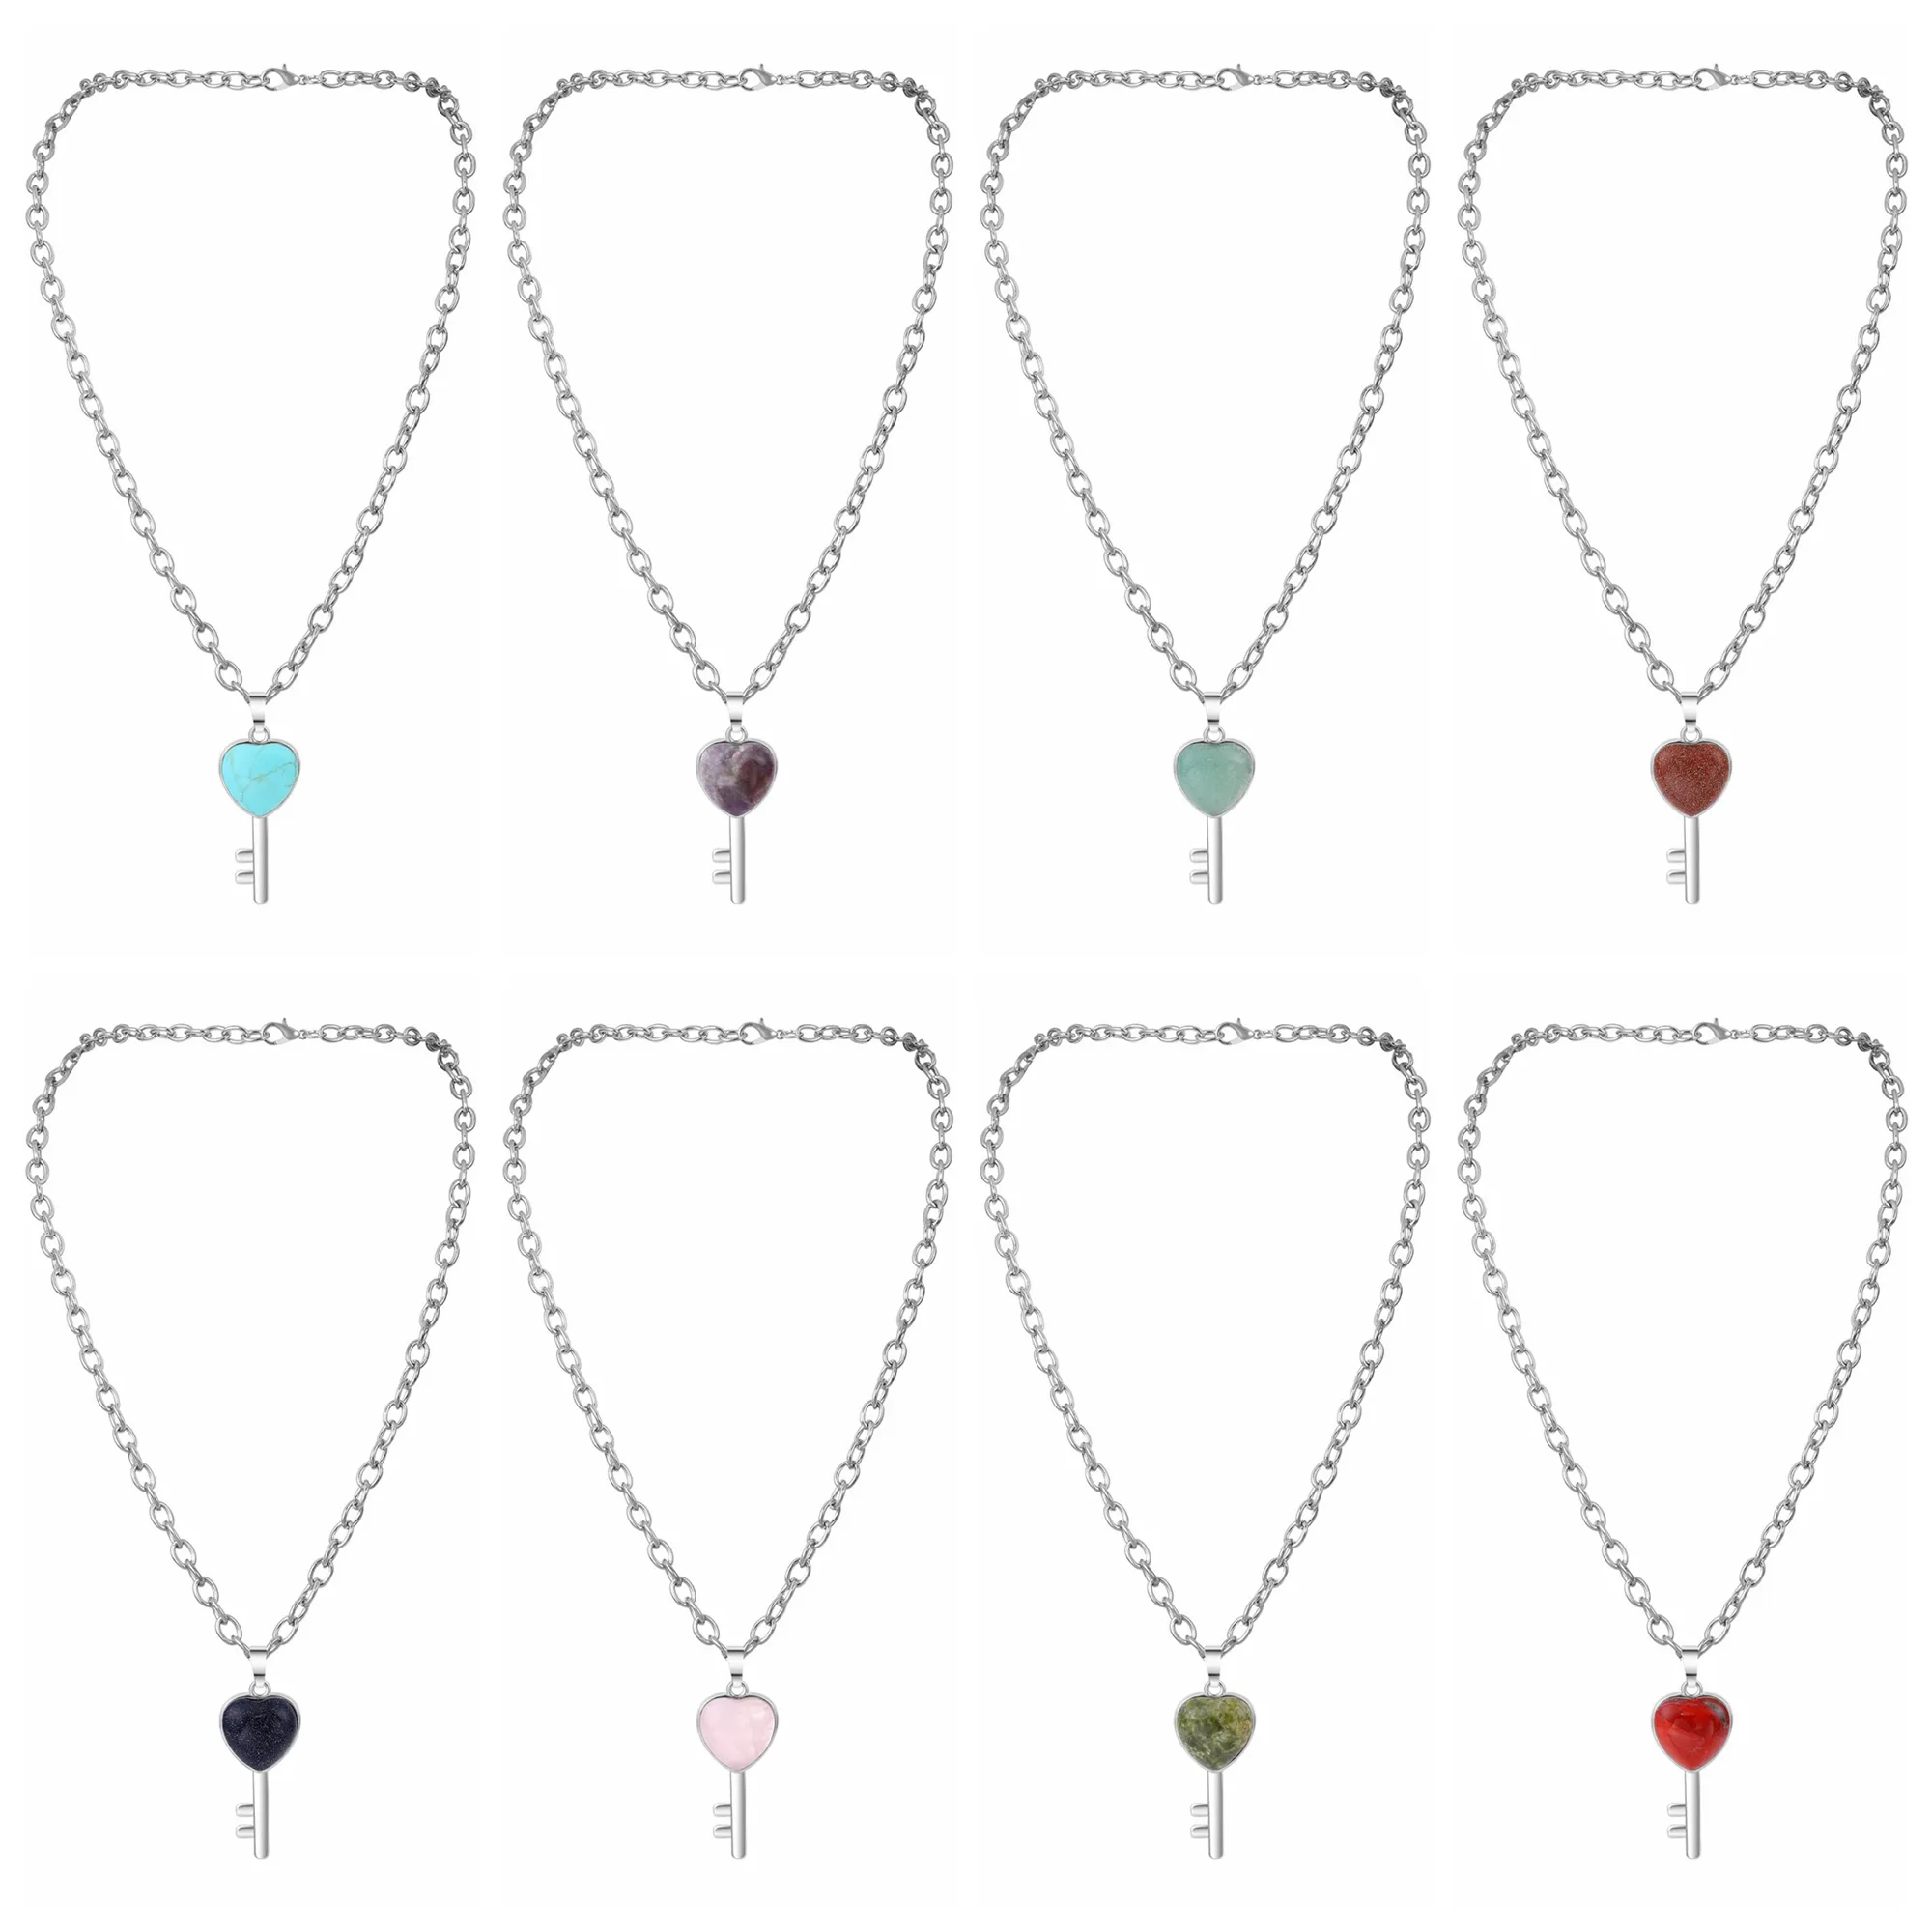 Naturstein-Schlüsselanhänger, Y-Halskette, klobige Punk-Silberkette, Choker, kubanischer Link, Statement-Schmuck für Frauen und Mädchen